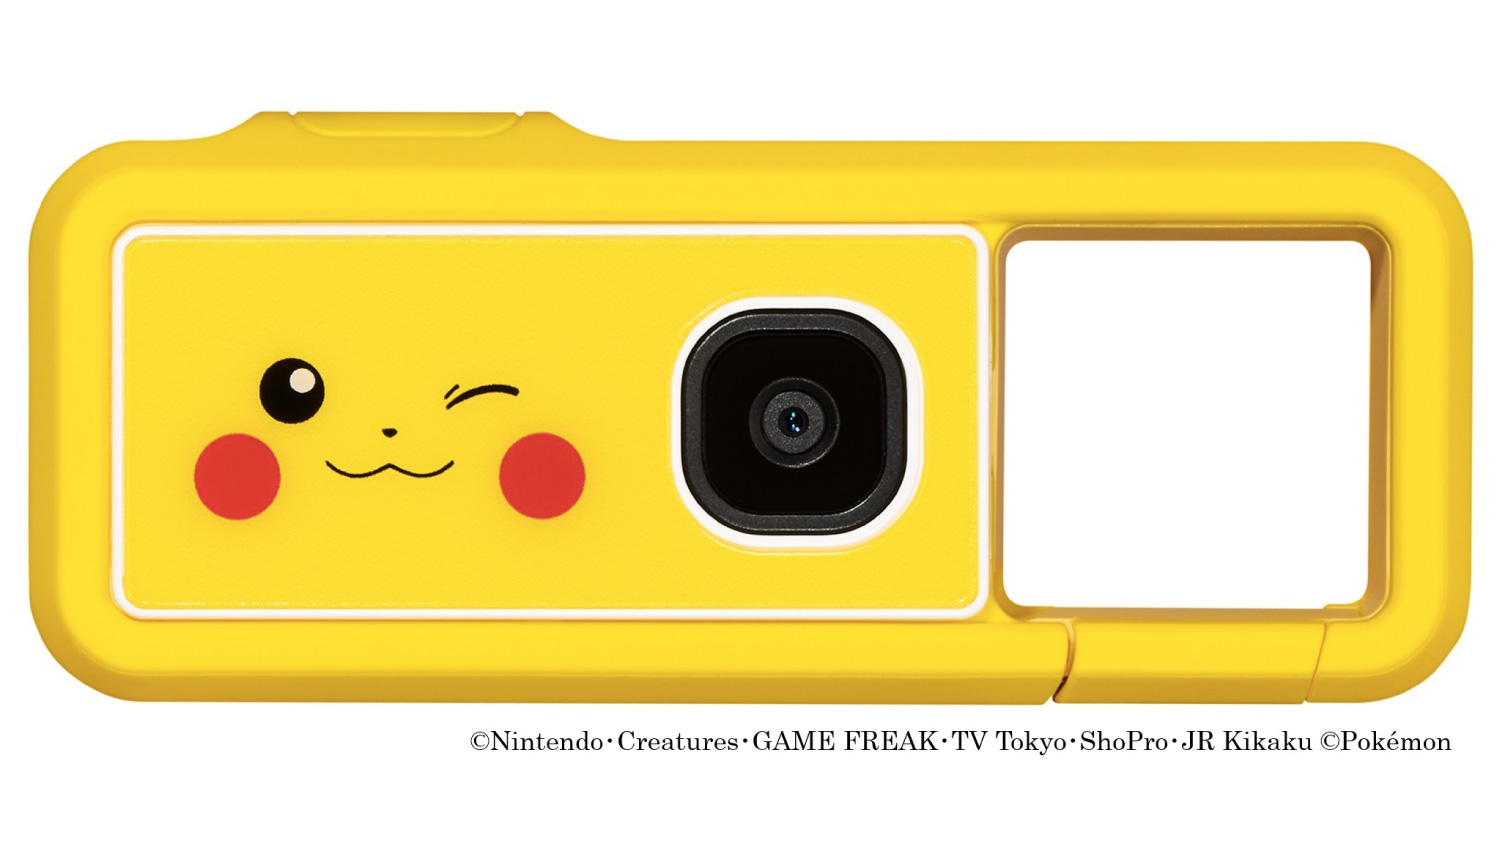 Canon révèle son appareil photo au design Pikachu : iNSPiC REC